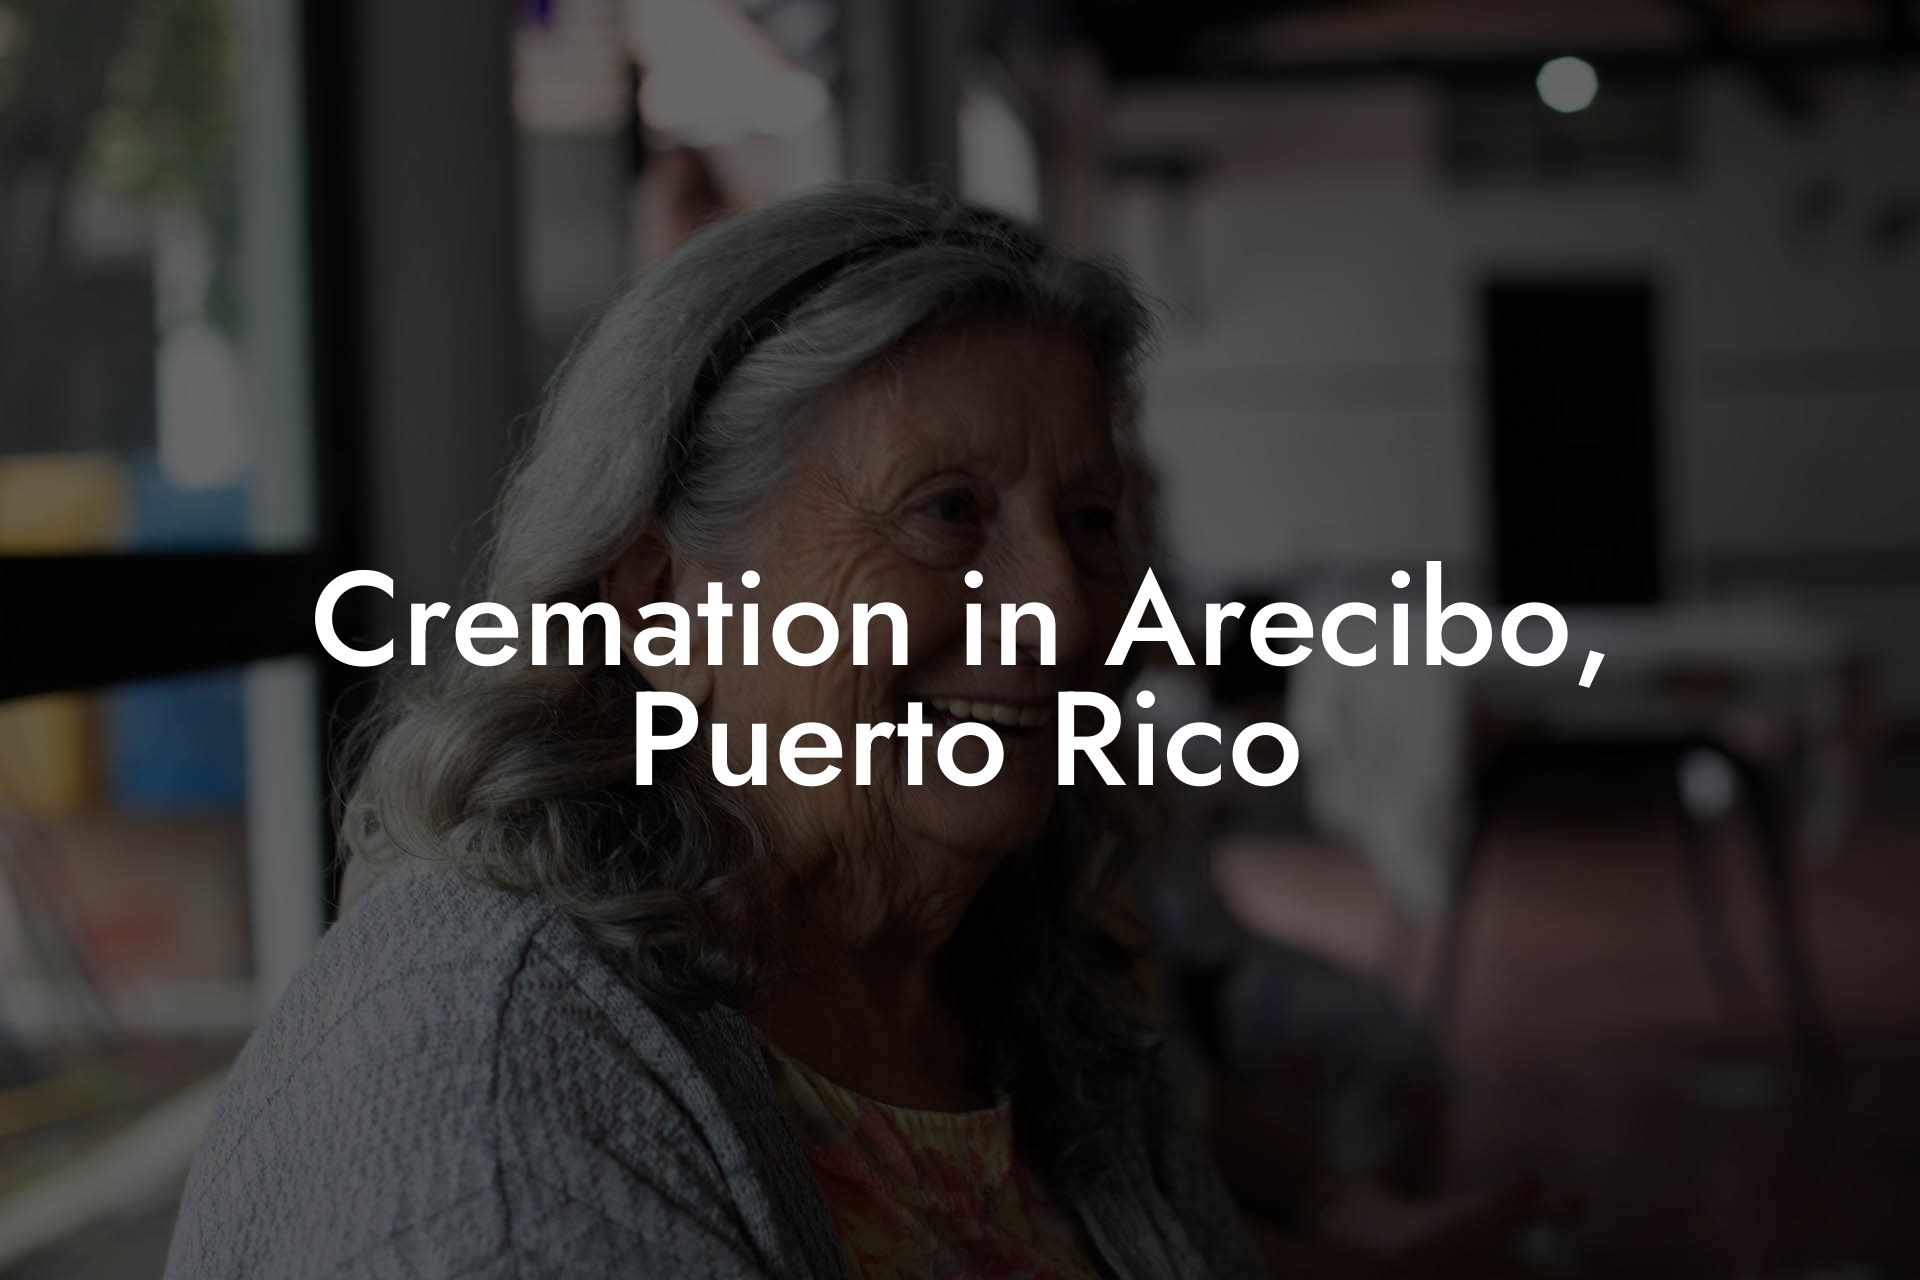 Cremation in Arecibo, Puerto Rico